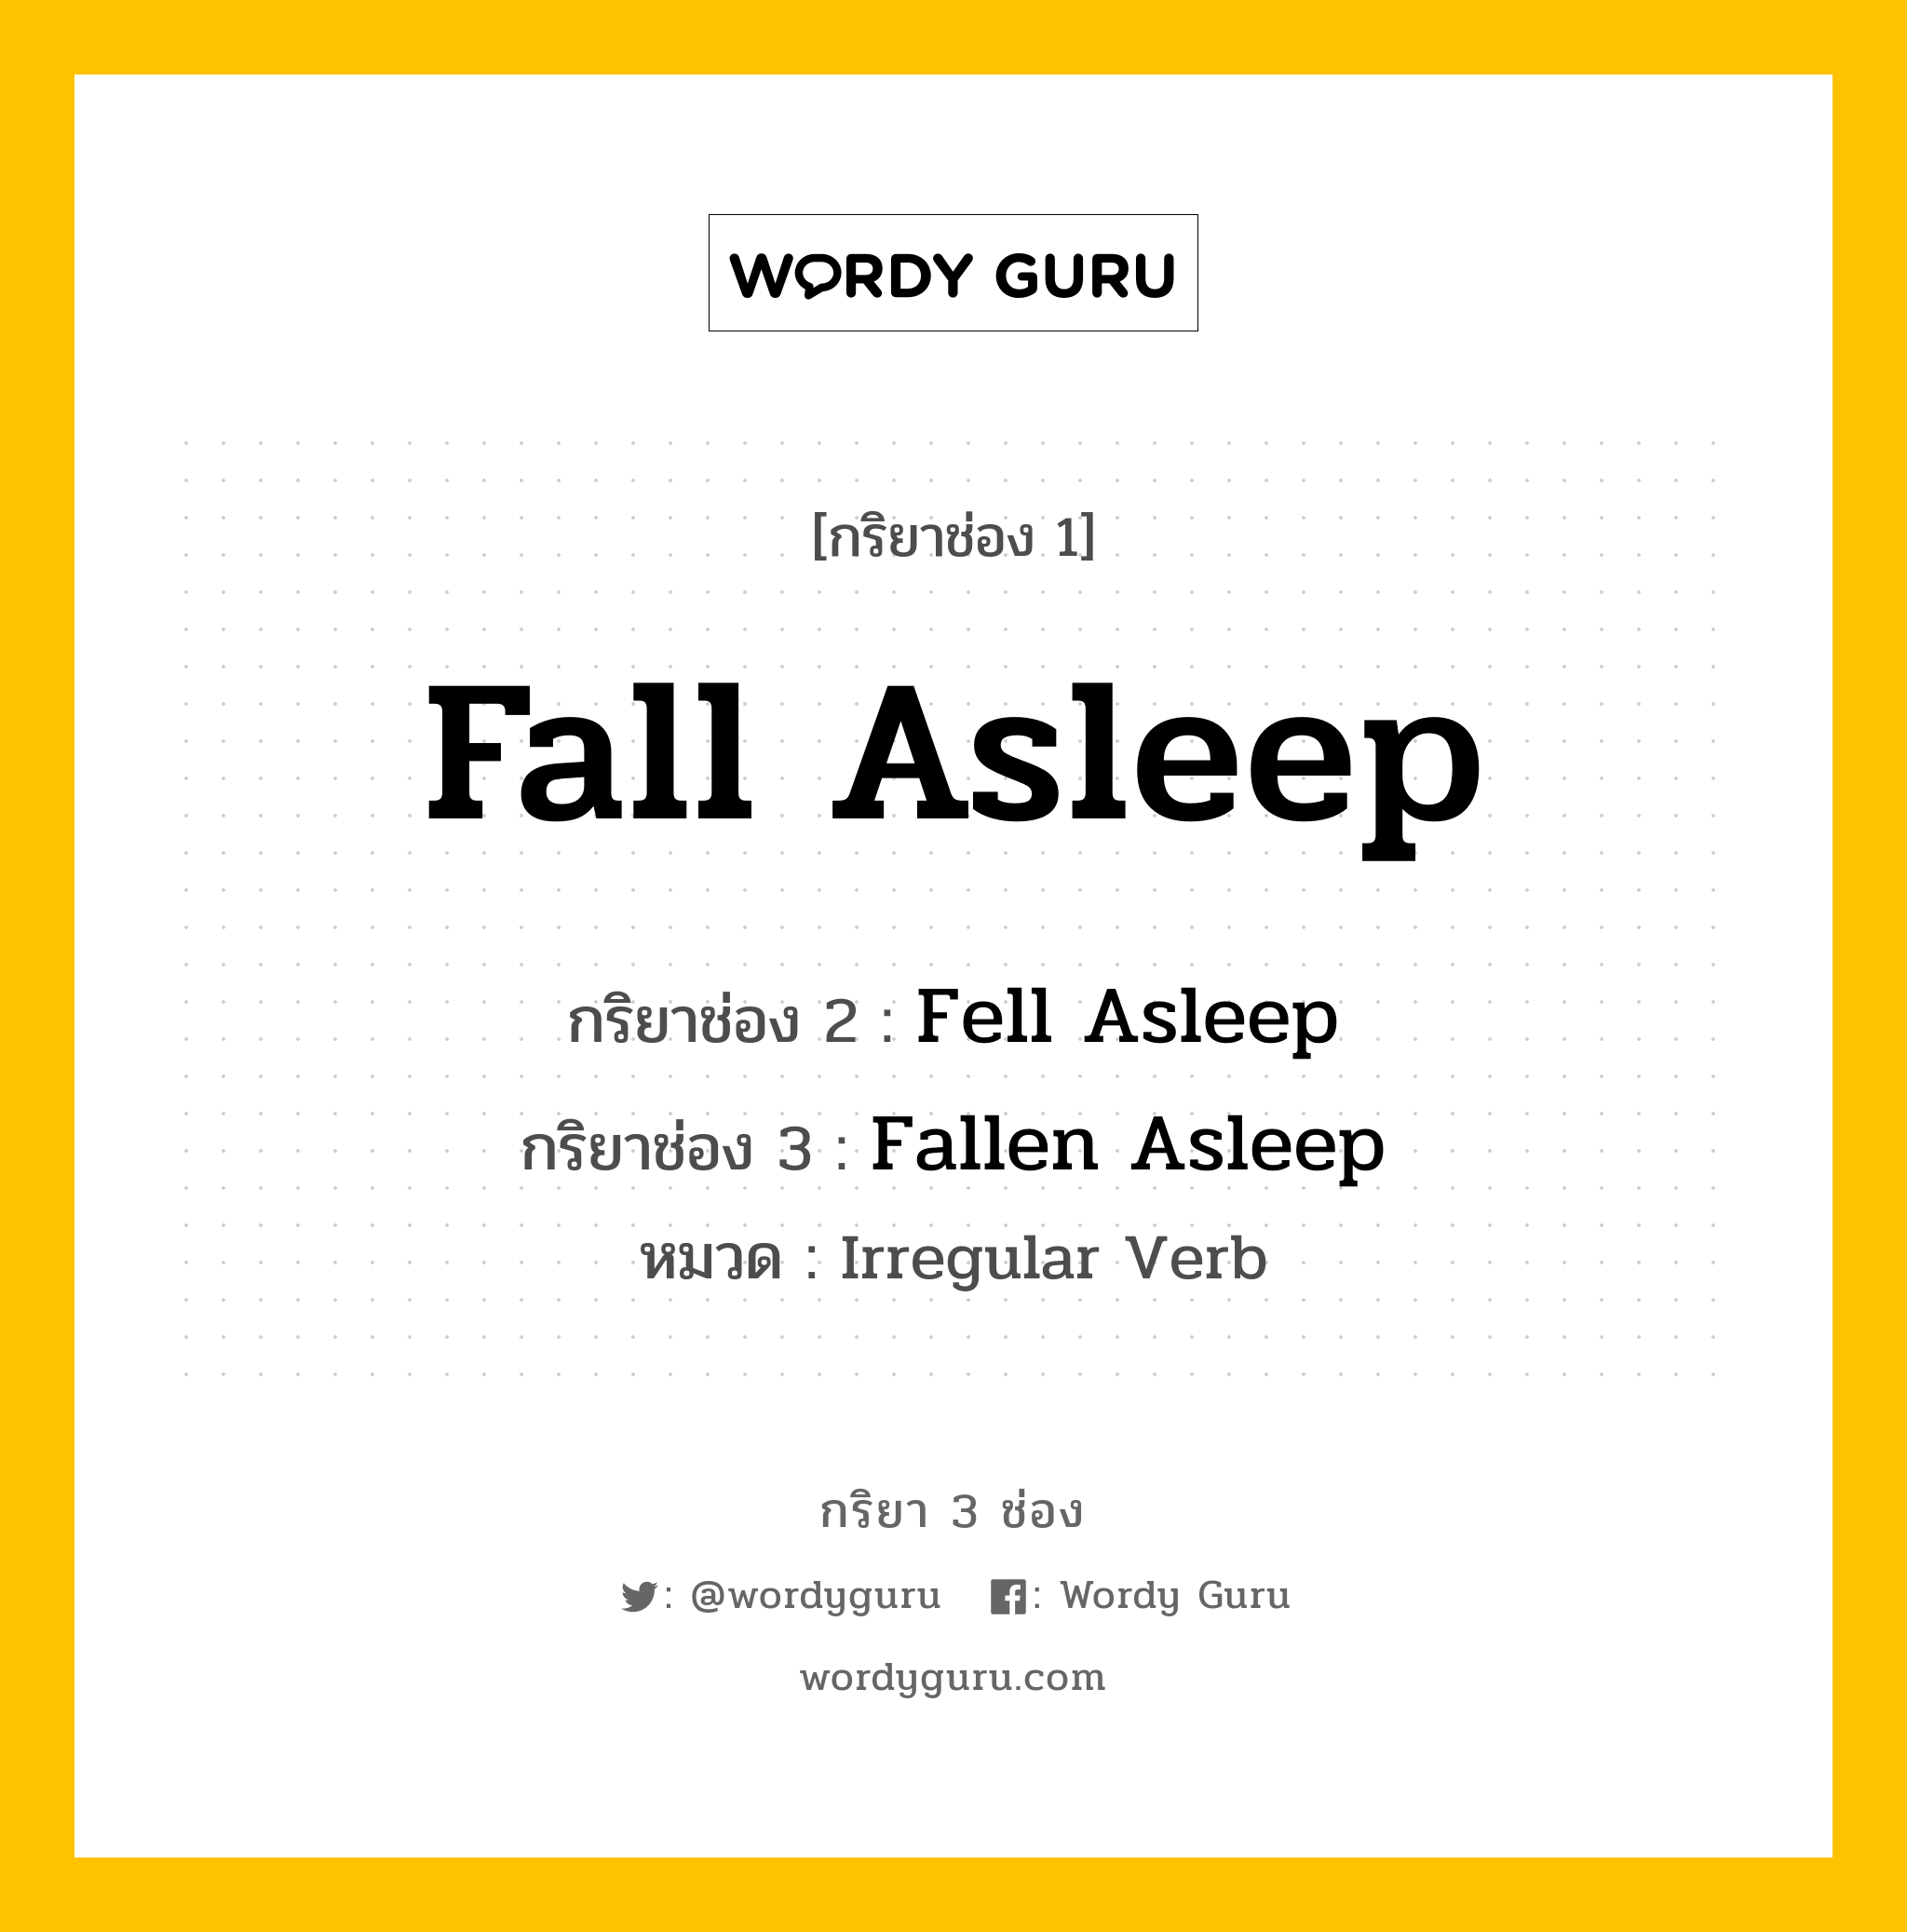 Fall Asleep มีกริยา 3 ช่องอะไรบ้าง? คำศัพท์ในกลุ่มประเภท Irregular Verb, กริยาช่อง 1 Fall Asleep กริยาช่อง 2 Fell Asleep กริยาช่อง 3 Fallen Asleep หมวด Irregular Verb หมวด Irregular Verb